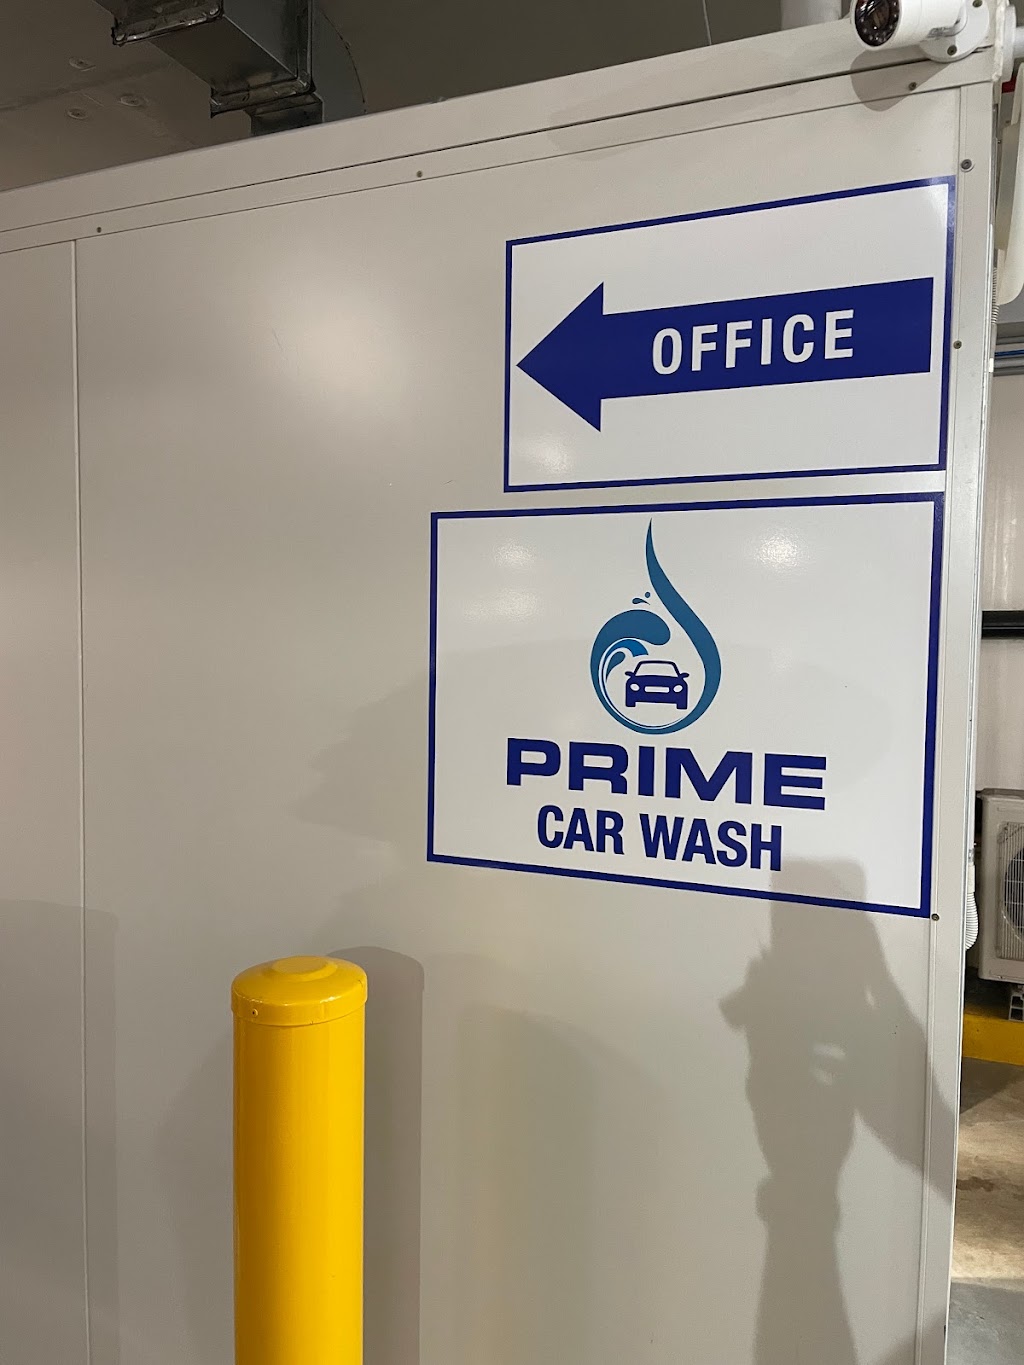 Prime Car Wash - Schofields | car wash | 227 Railway Terrace, Schofields NSW 2762, Australia | 0466897753 OR +61 466 897 753